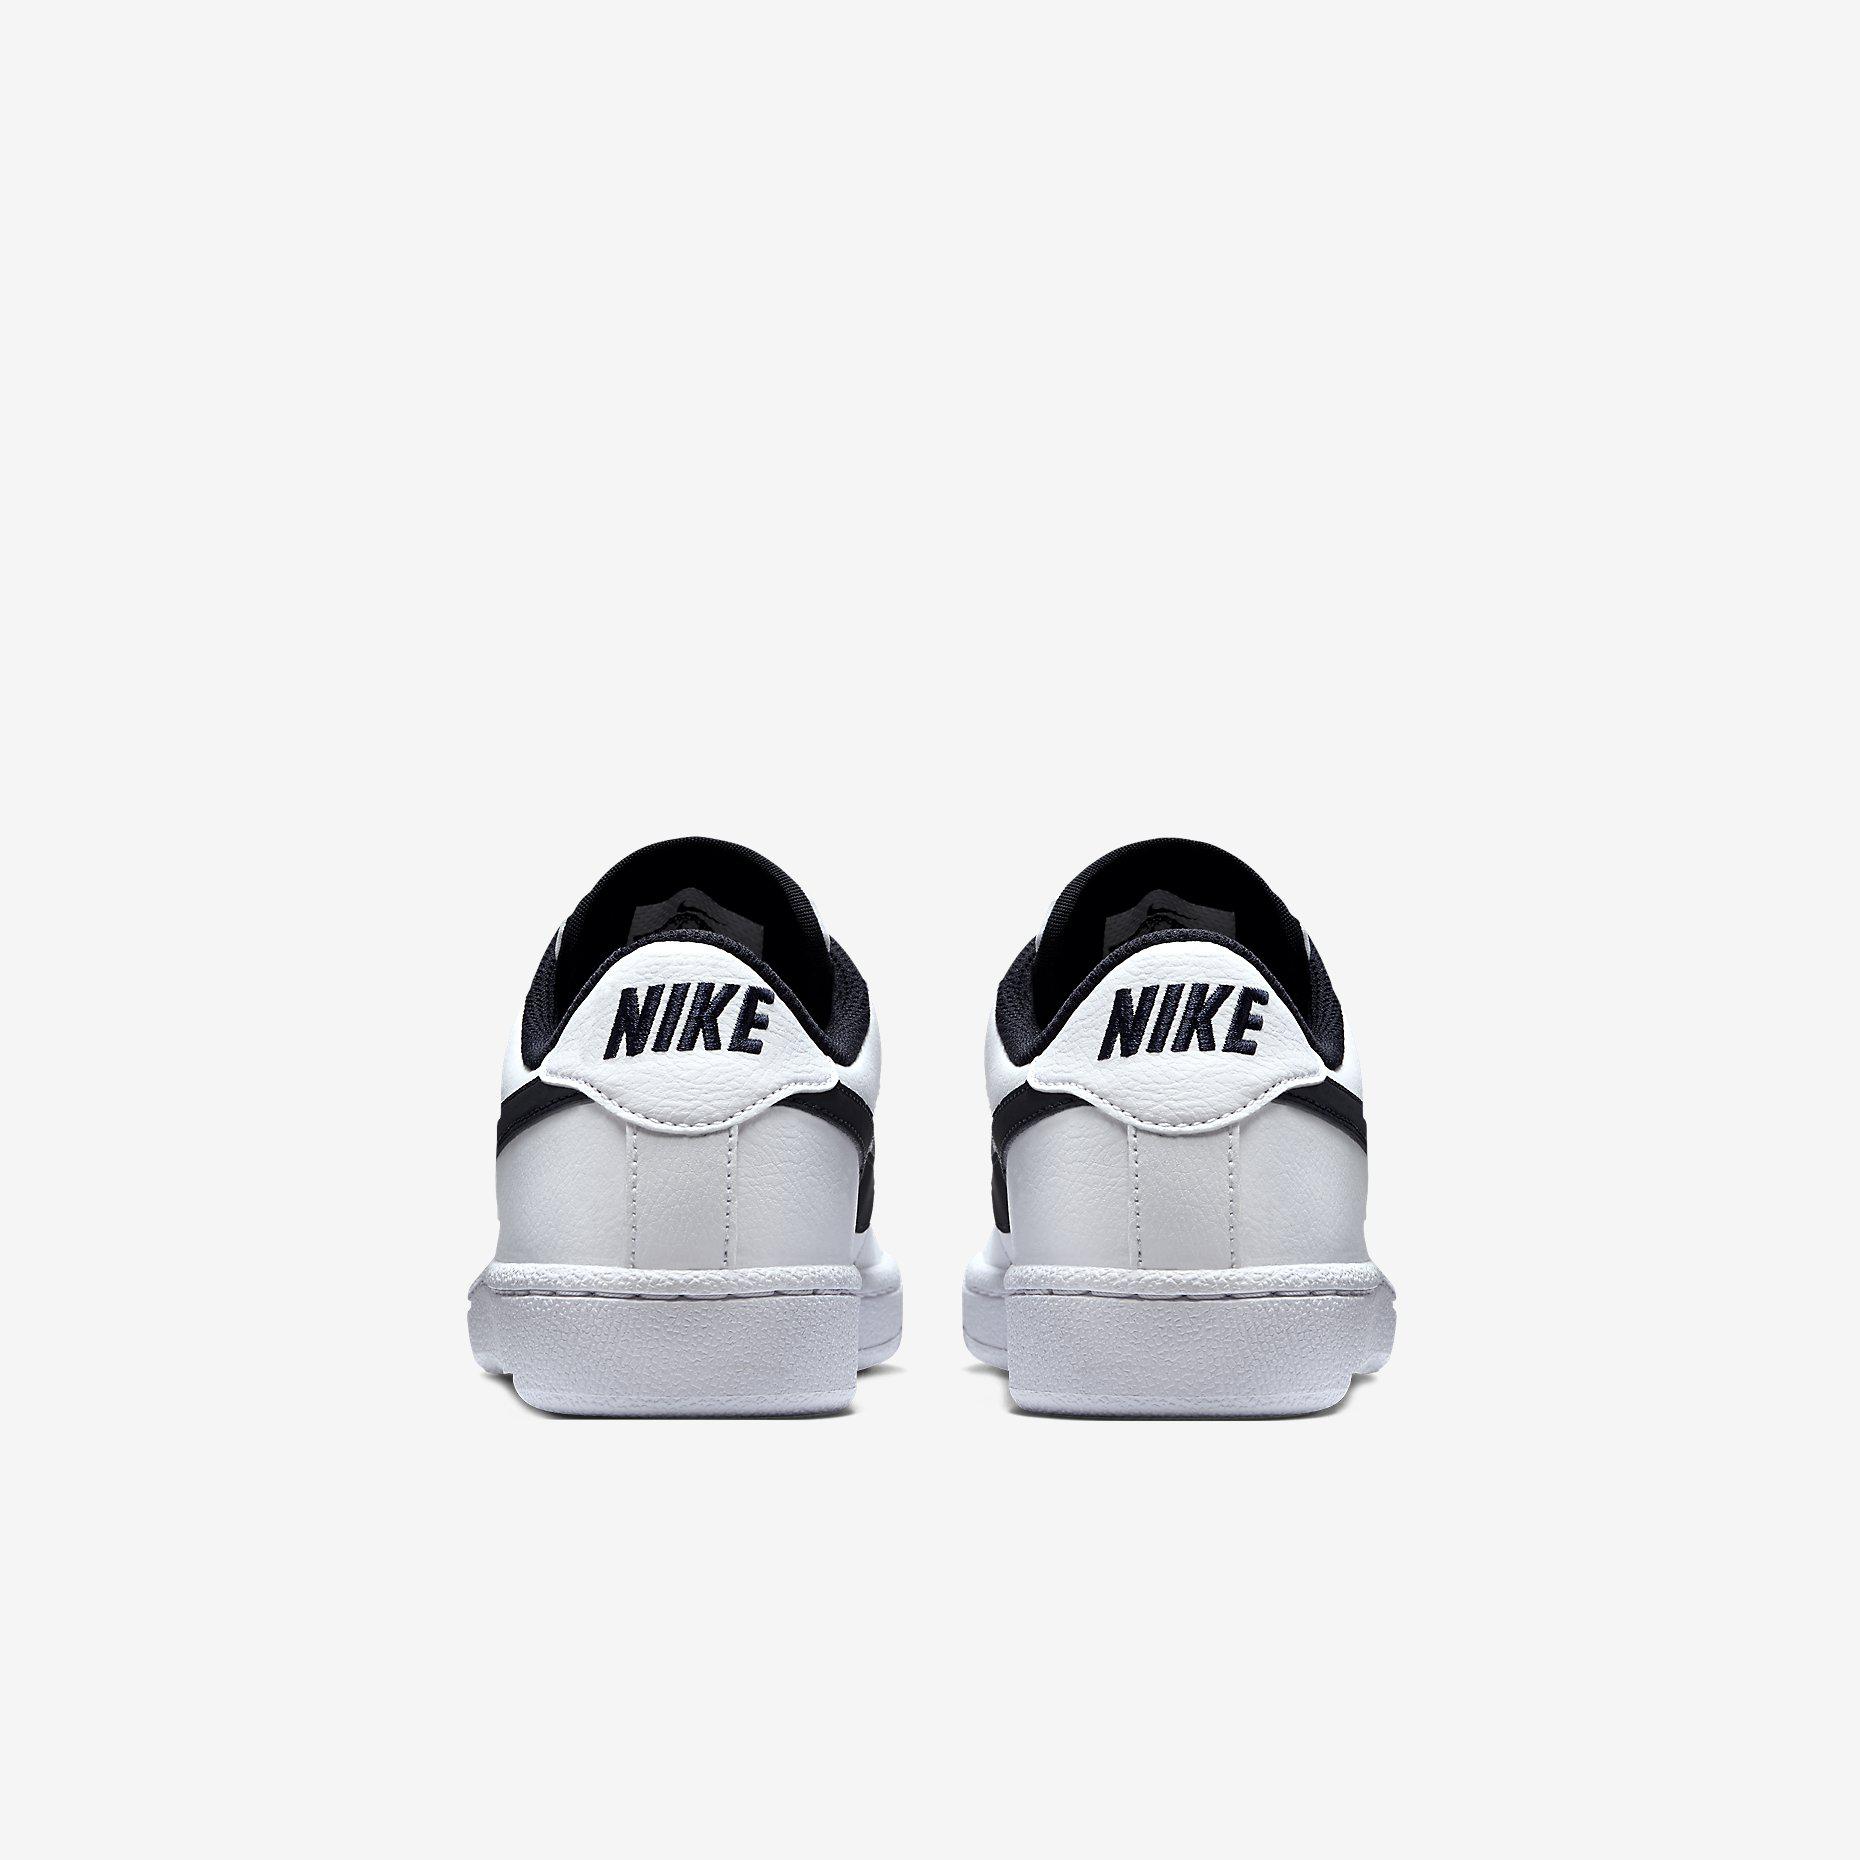 Nike Boys Classic Tennis Shoes - White/Obsidian - Tennisnuts.com